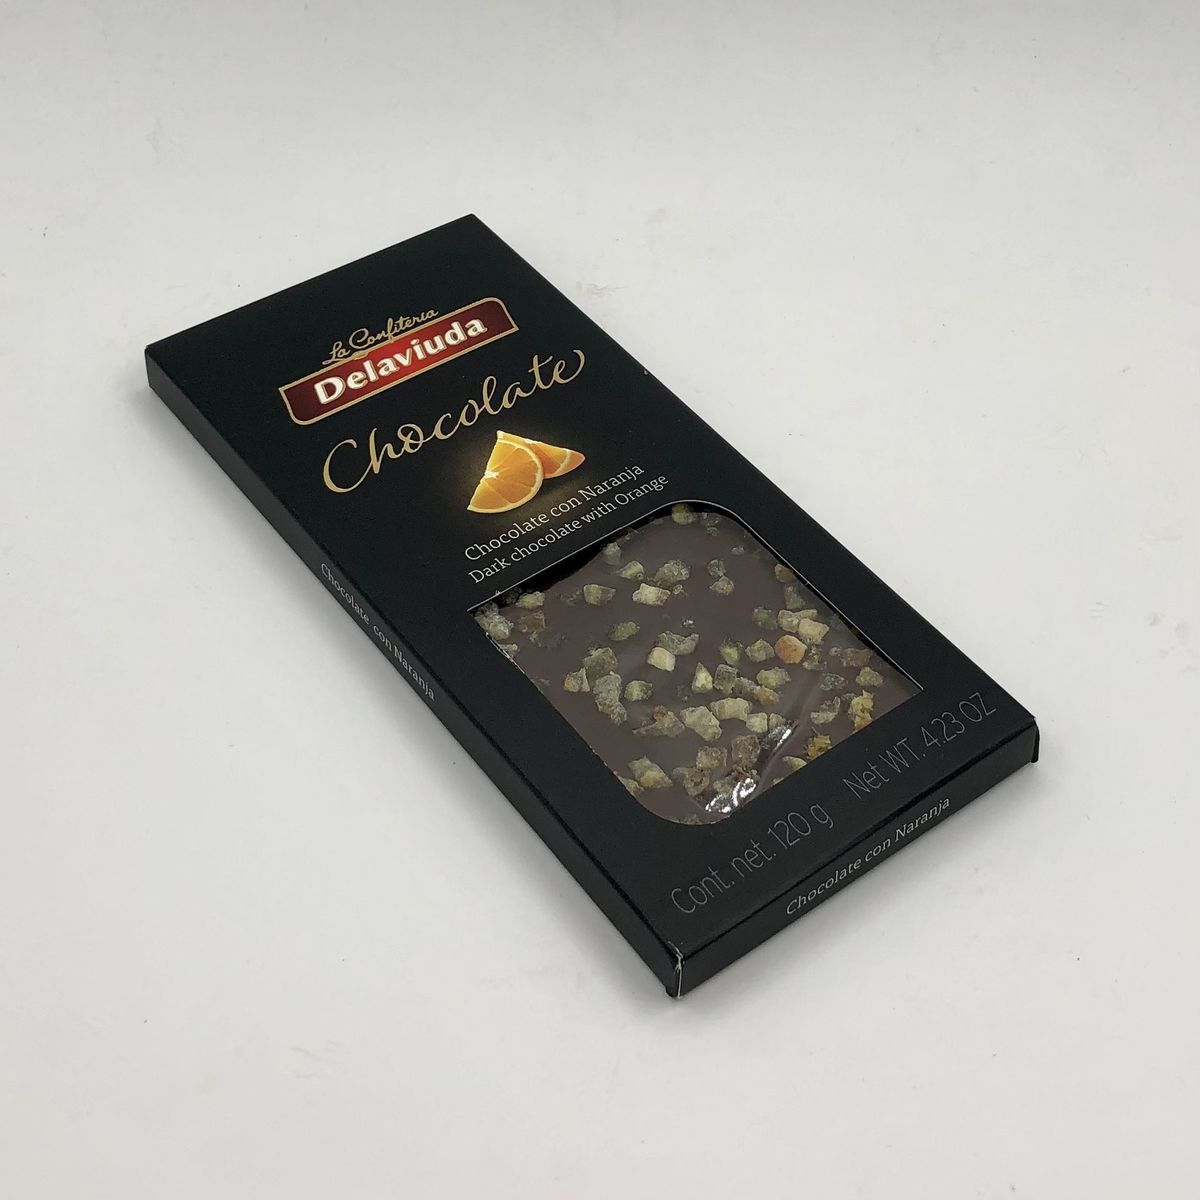 Горький шоколад Delaviuda с апельсиновыми цукатами120 г